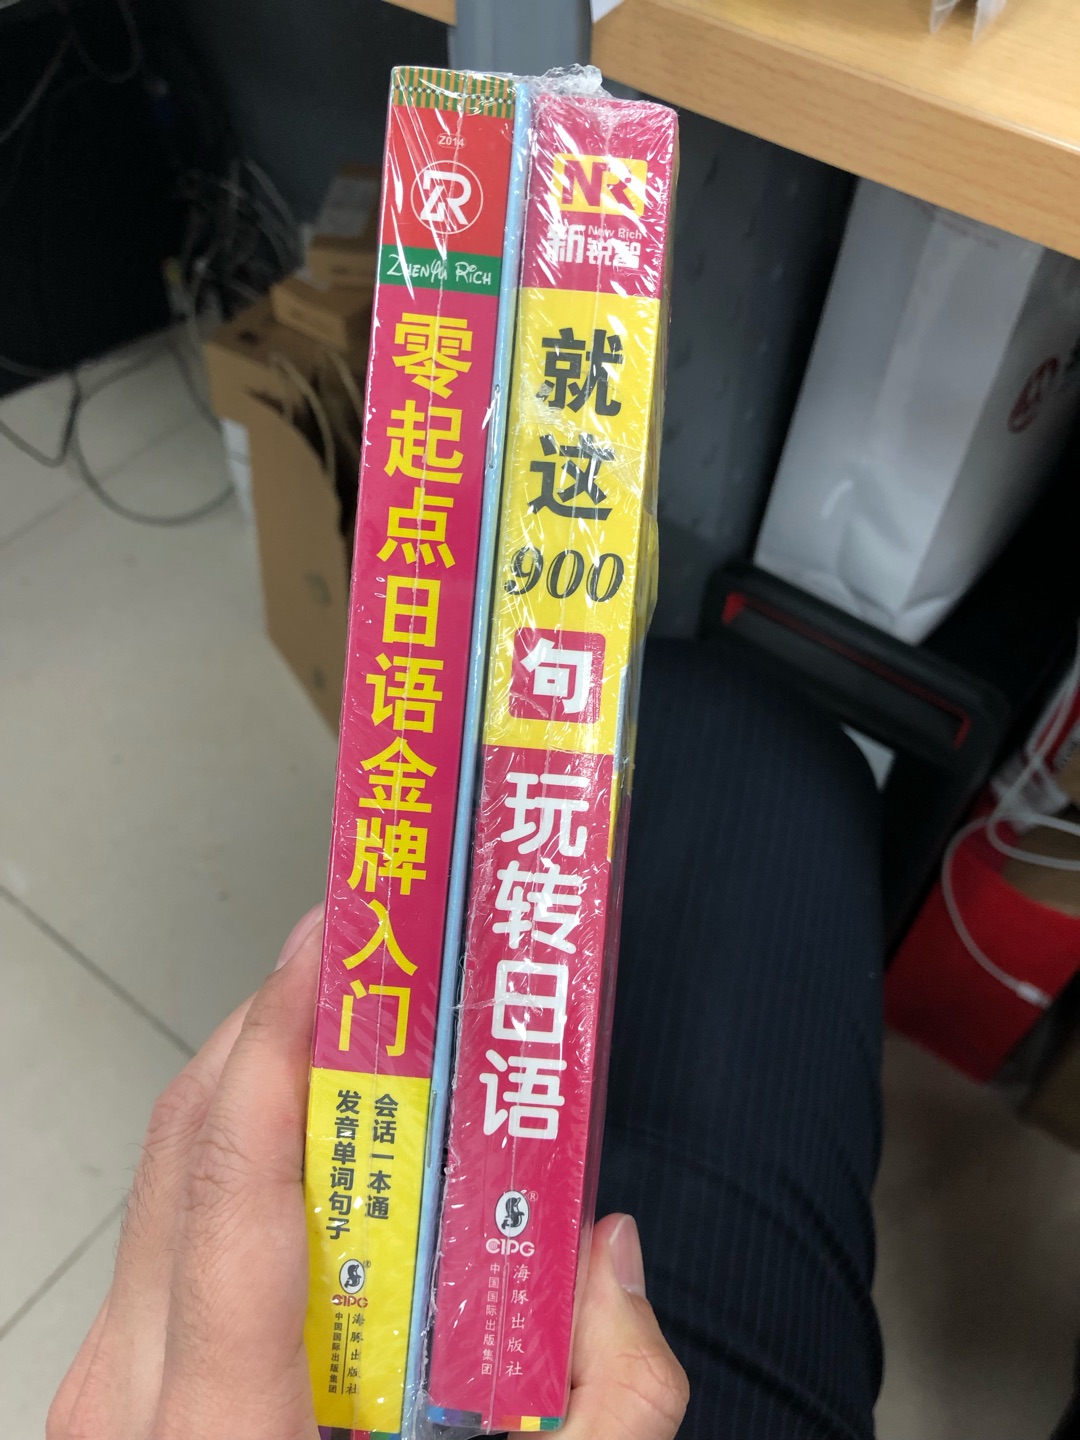 快的速度很快，书的质量也不错，作为日语基础入门还不错的。